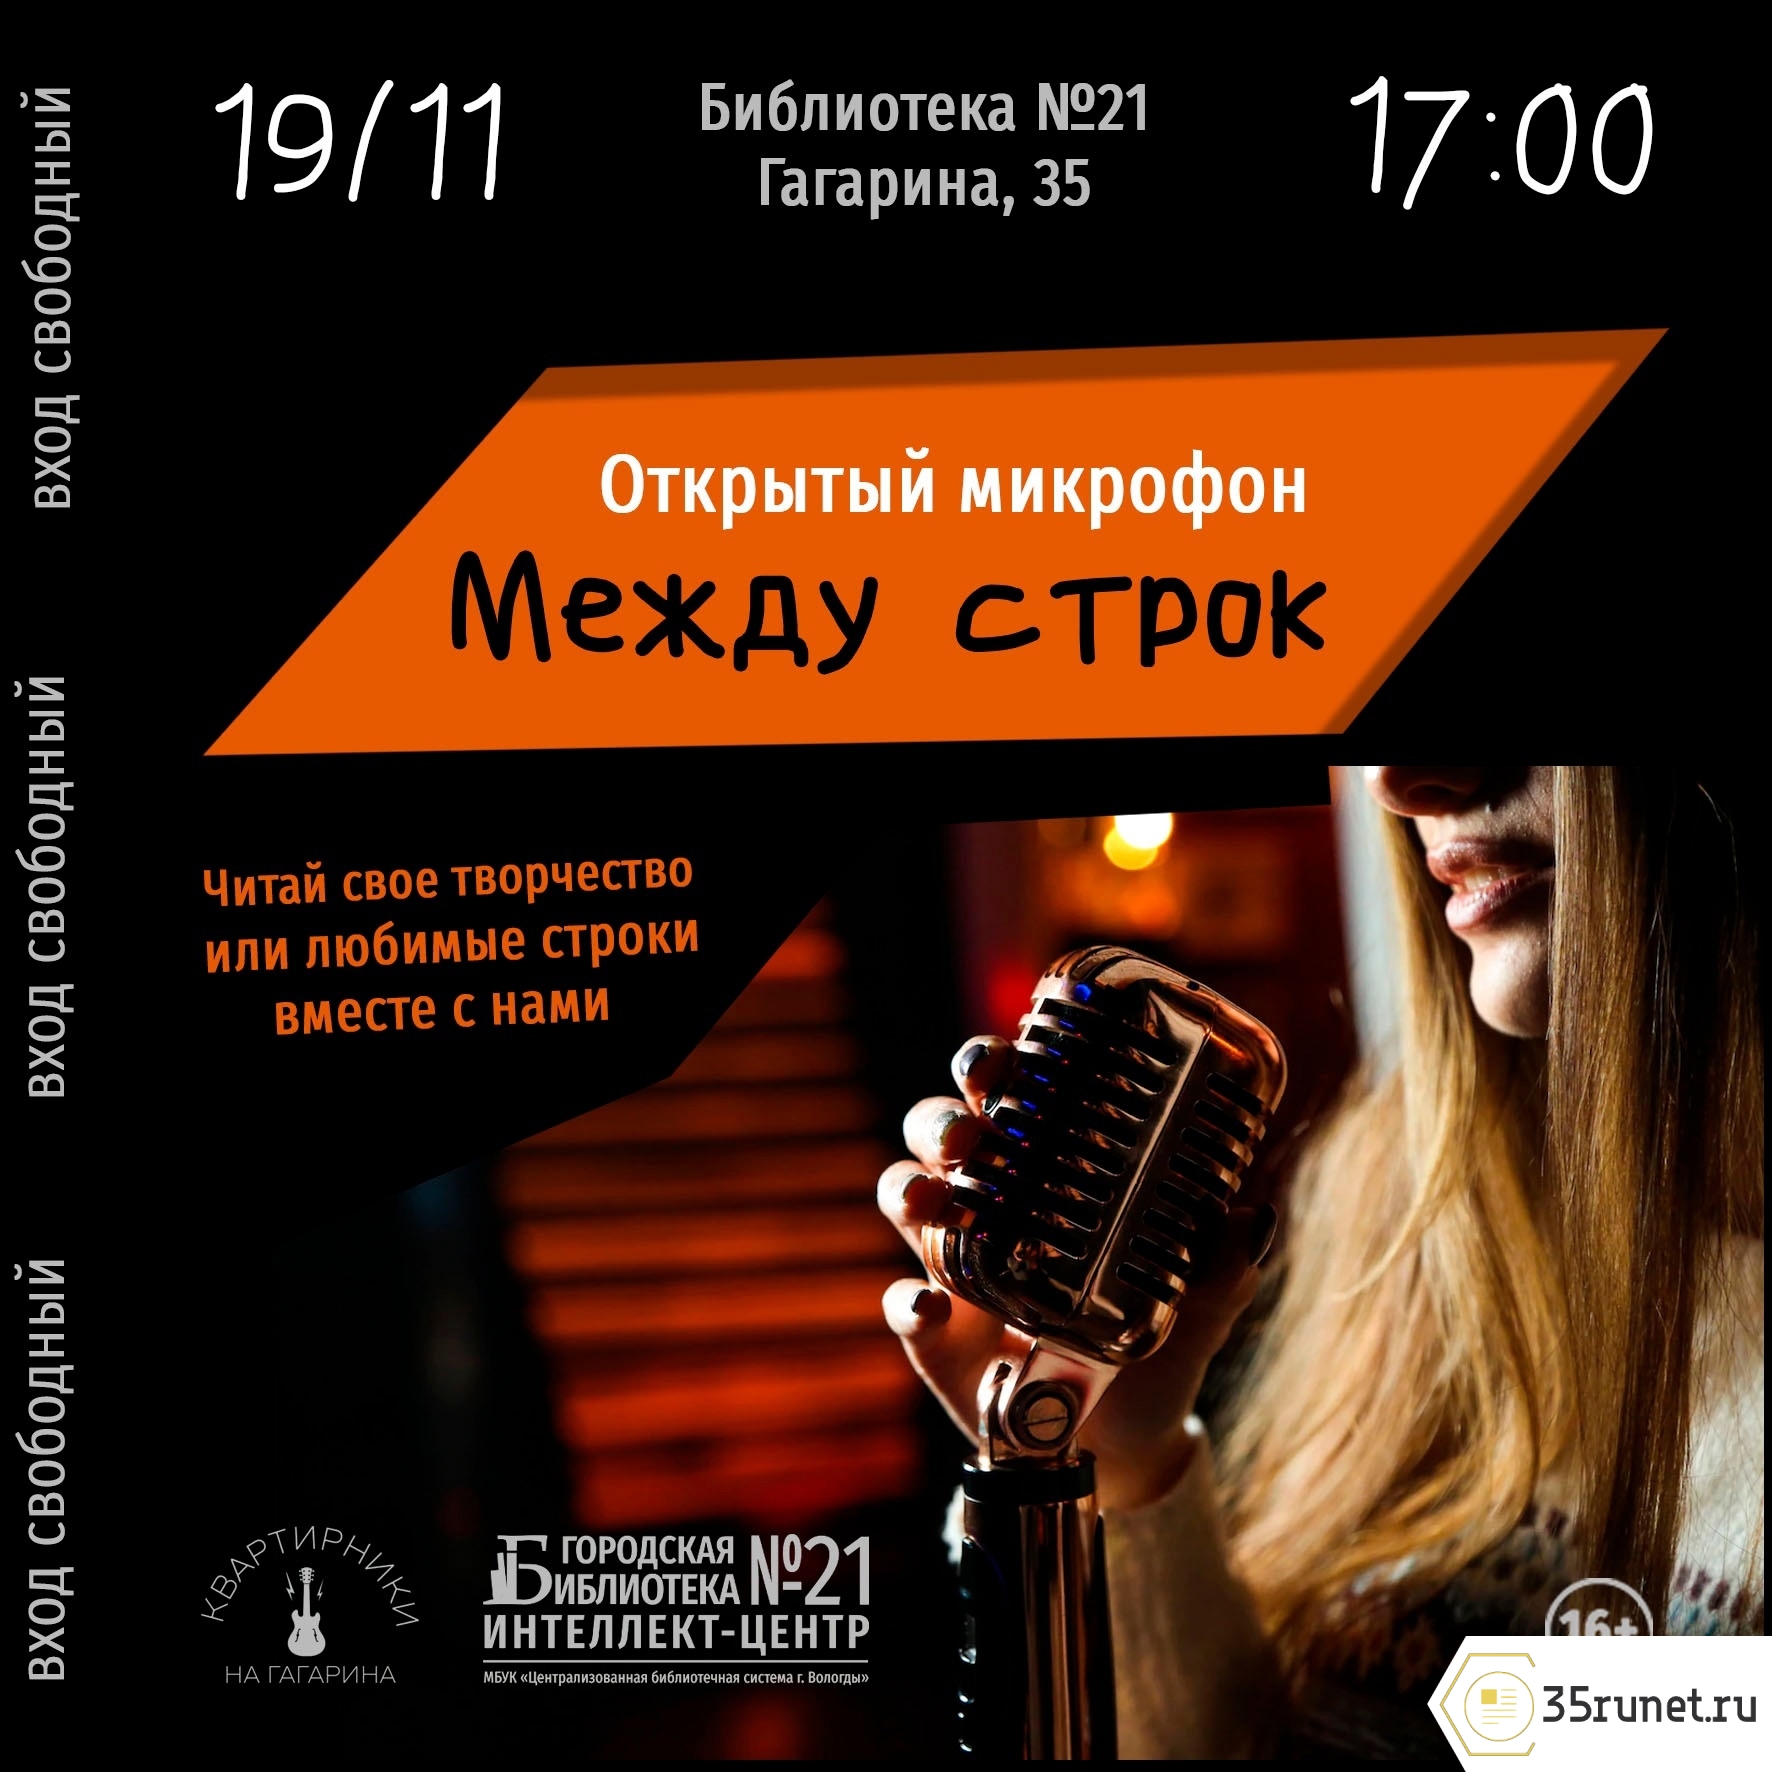 Открытый микрофон для авторов стихов и рассказов пройдет в Вологде 19 ноября